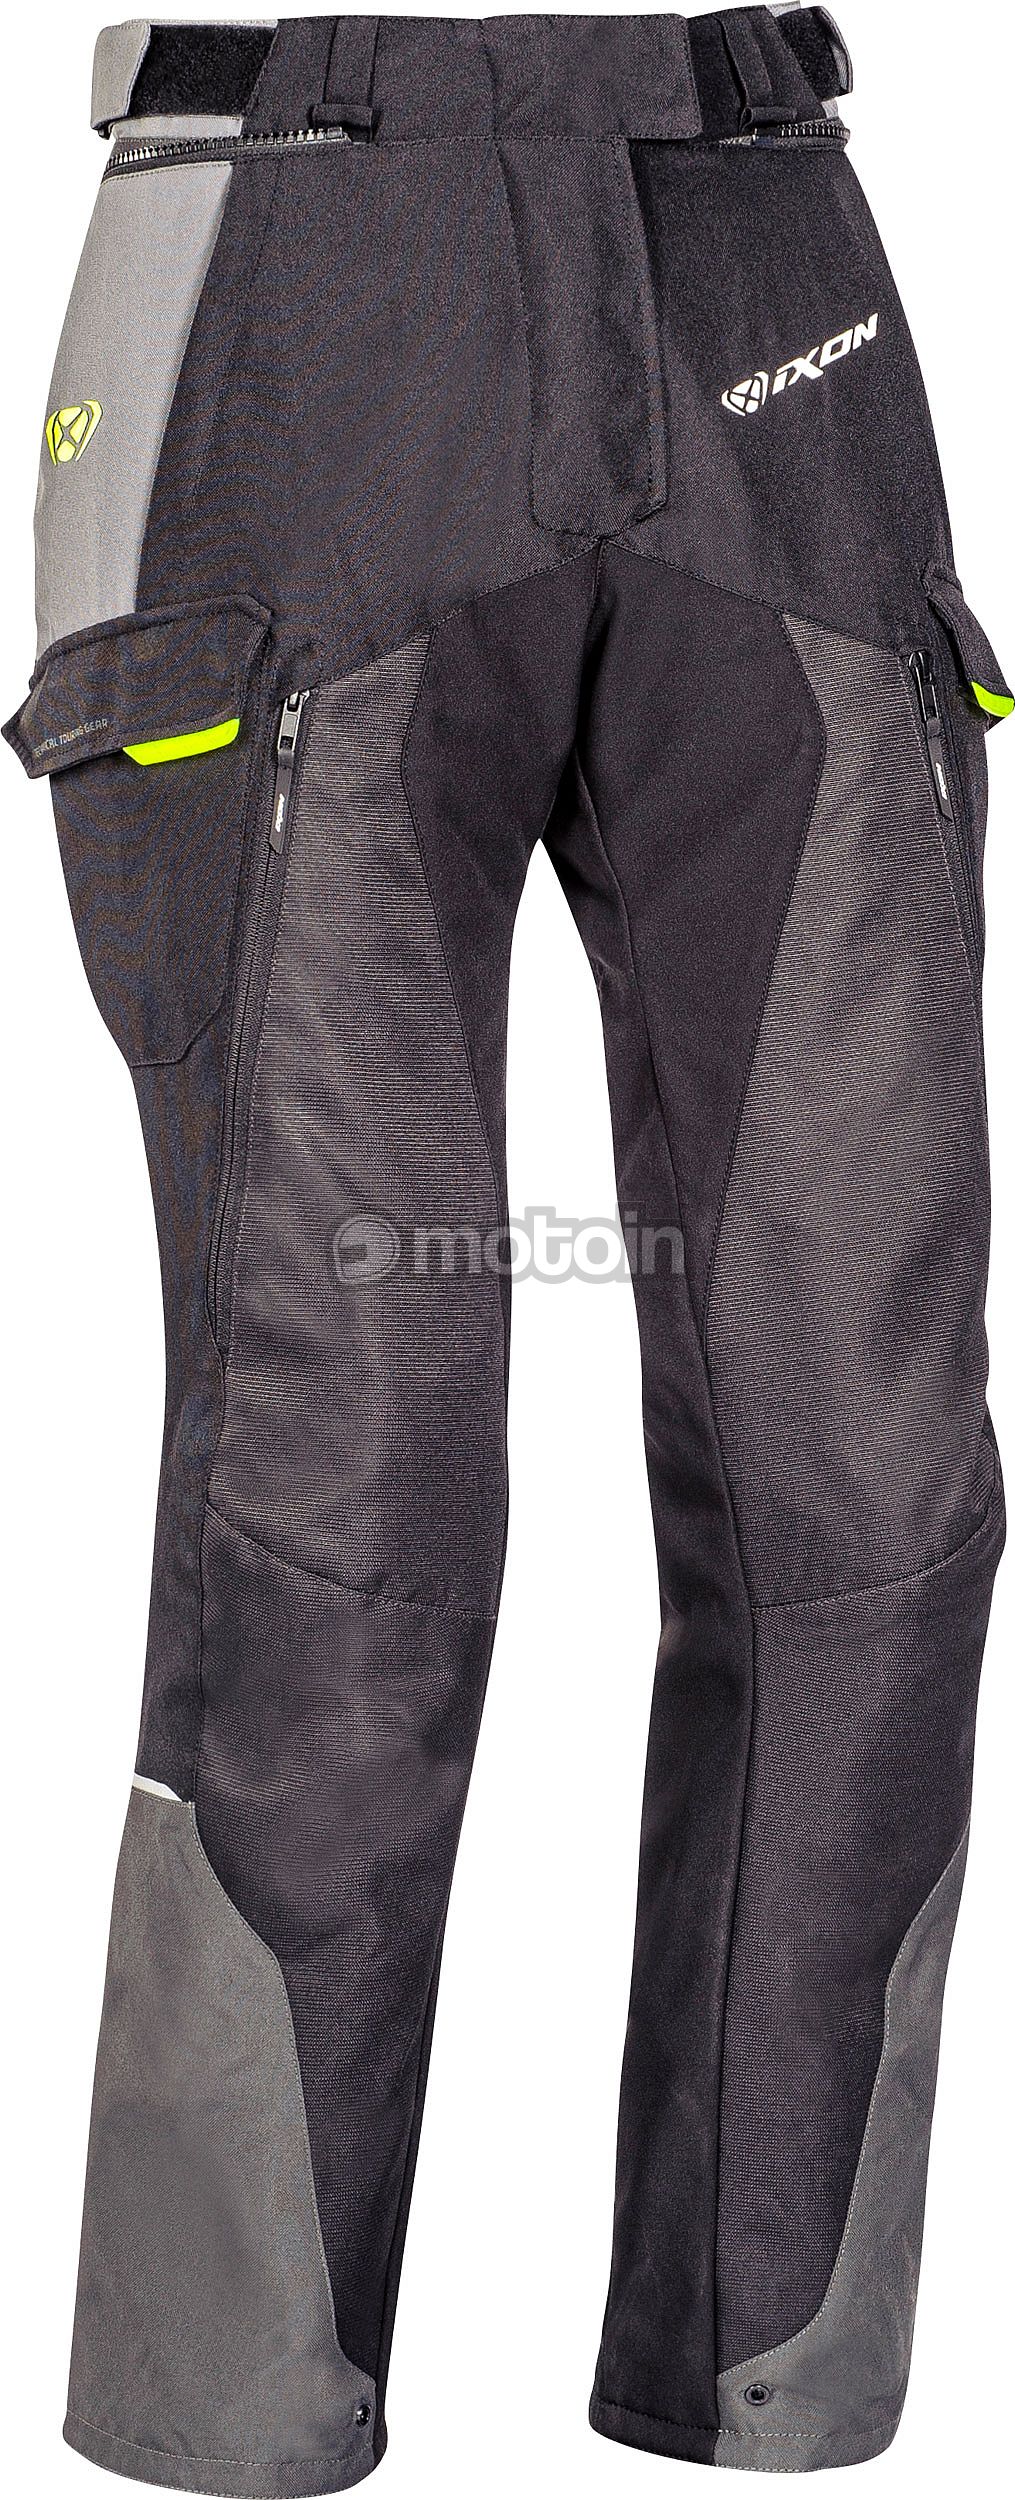 Amazon.com: CE Armour Mesh Summer Lady Trouser Apparel Motorcycle Textile  Sonicmoto Black 30 : Automotive